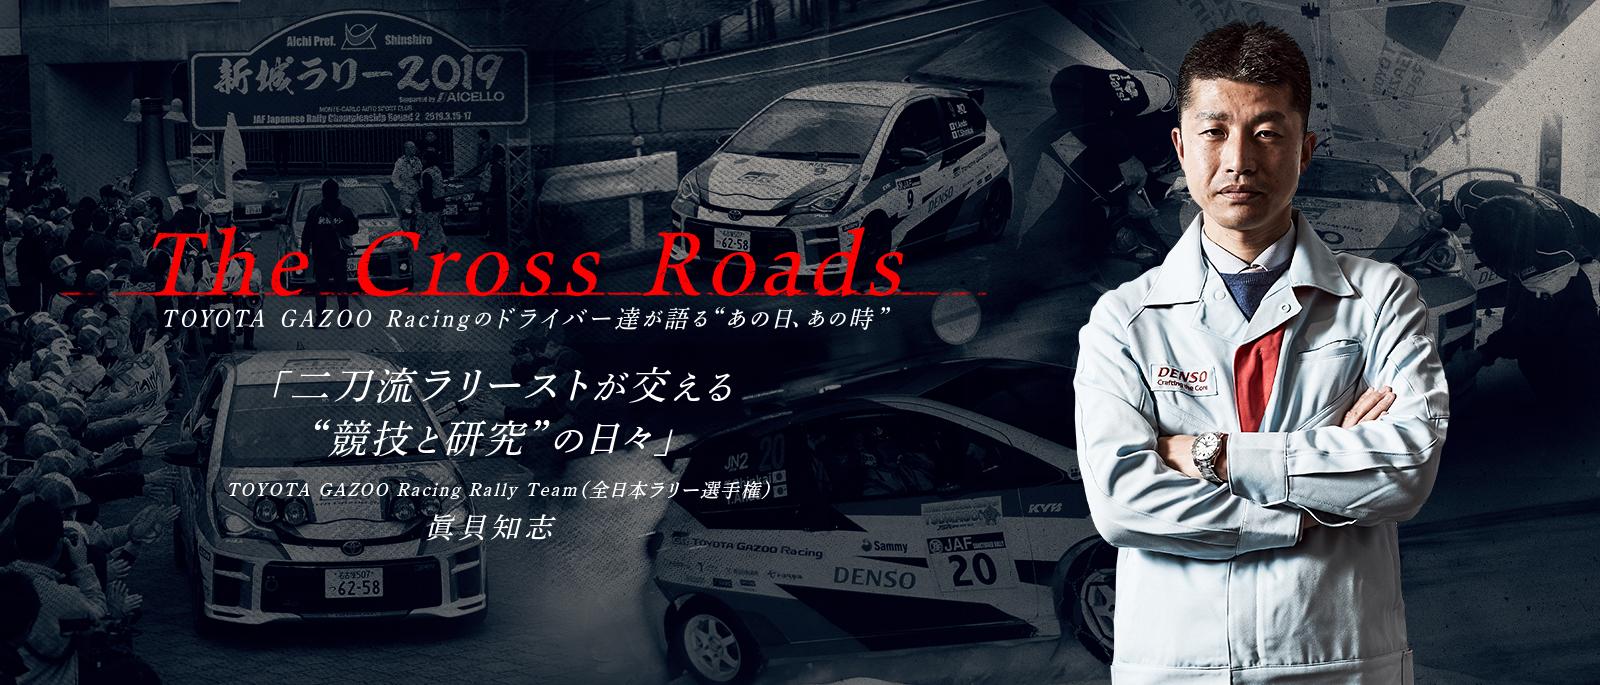 眞貝 知志「二刀流ラリーストが交える競技と研究の日々」| The Cross Roads 〜TOYOTA GAZOO Racingのドライバー達が語るあの日、あの時〜